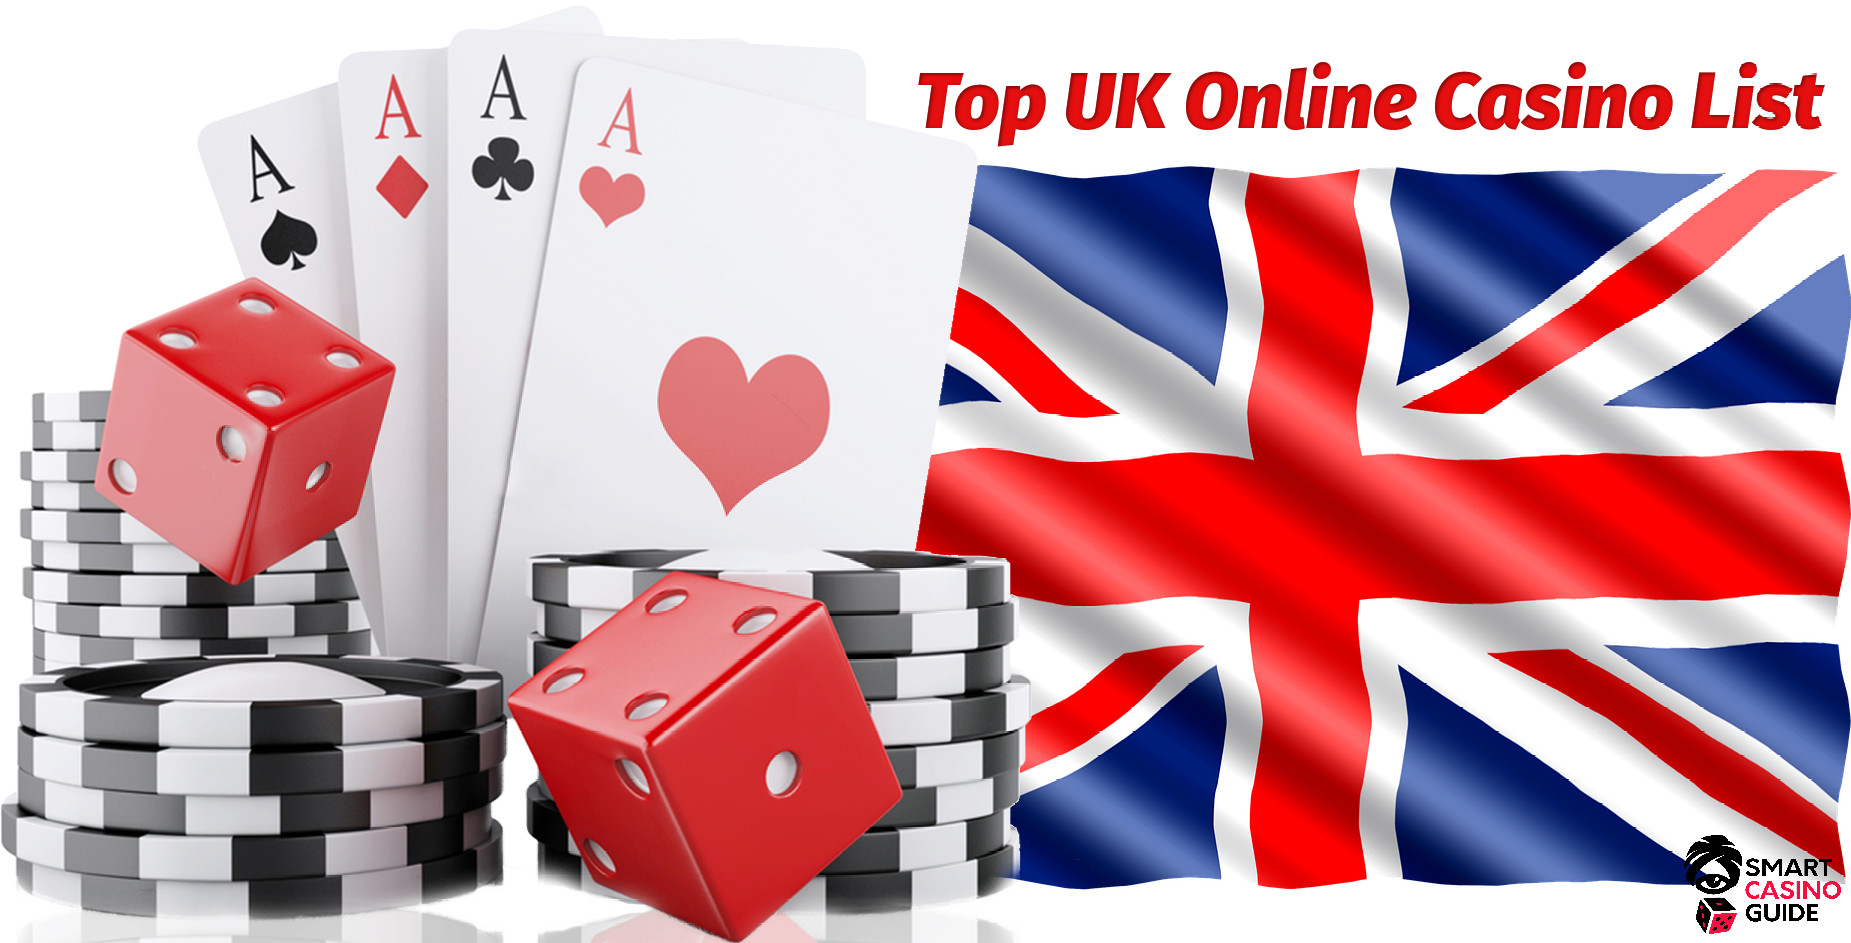 Best Online Casino Uk